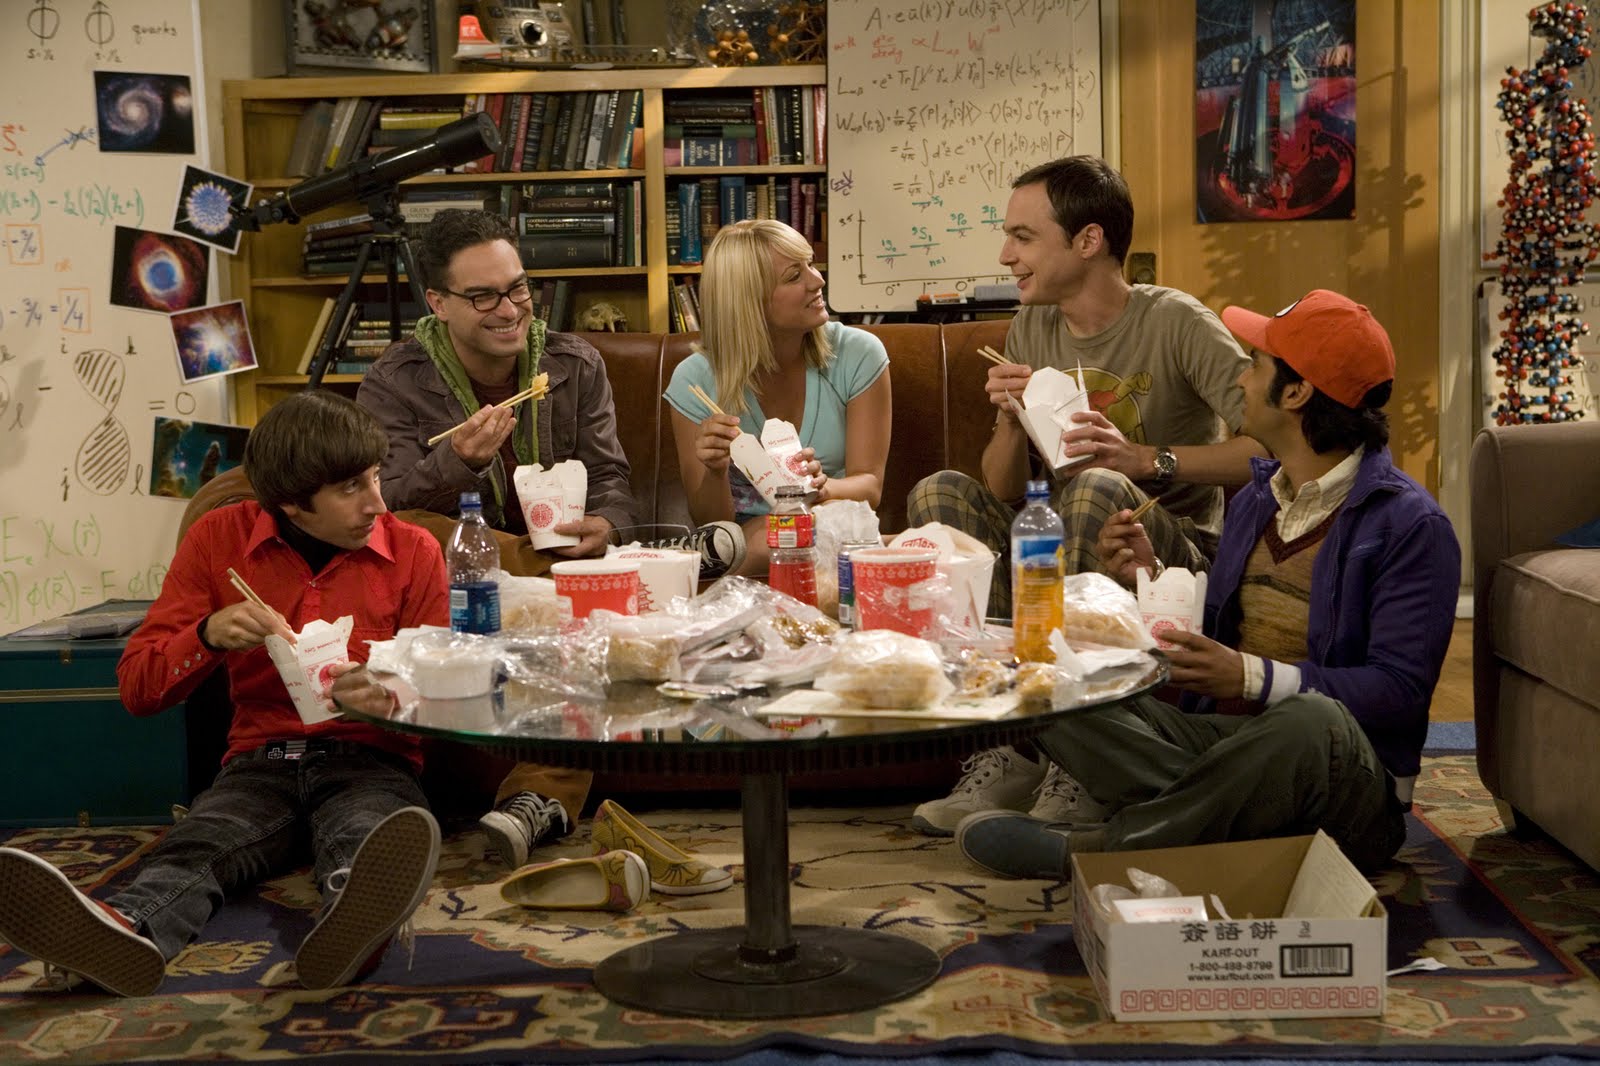 Fondos de pantalla de la serie The Big Bang Theory, Wallpapers